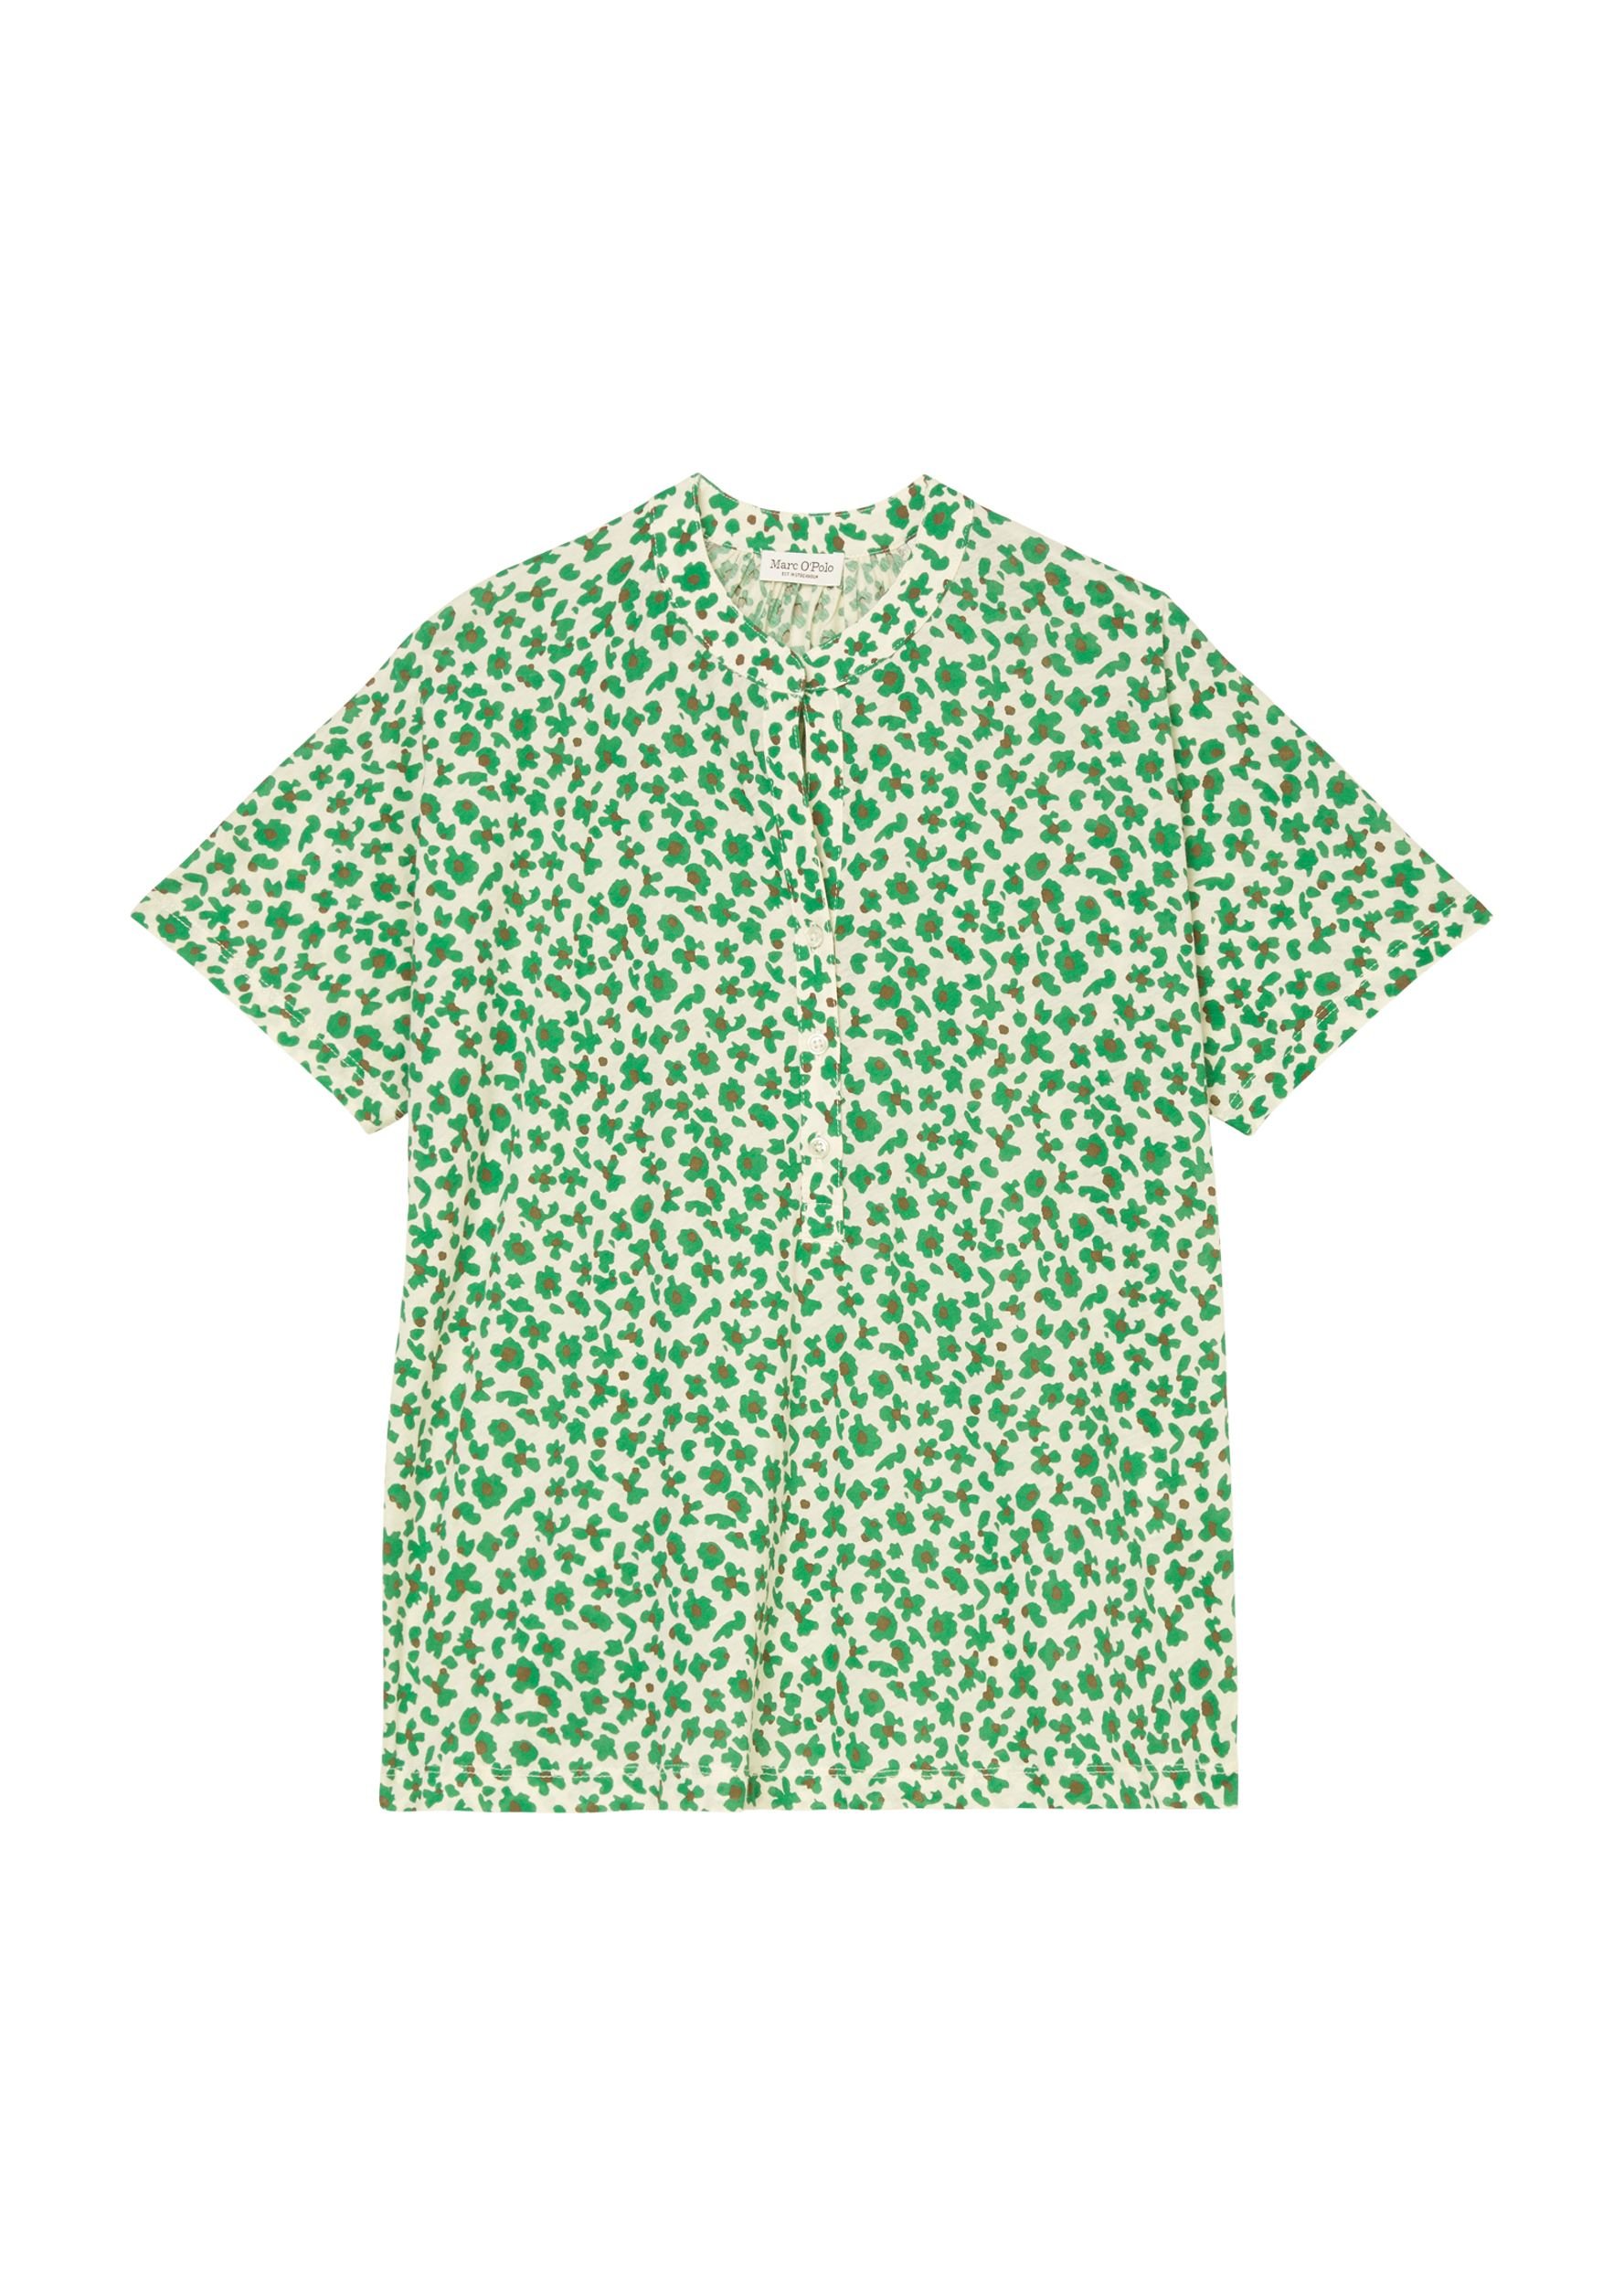 Gemusterte Damen Bluse aus Jersey-Stoff mit kurzen Ärmeln in multi/vivid green - grün